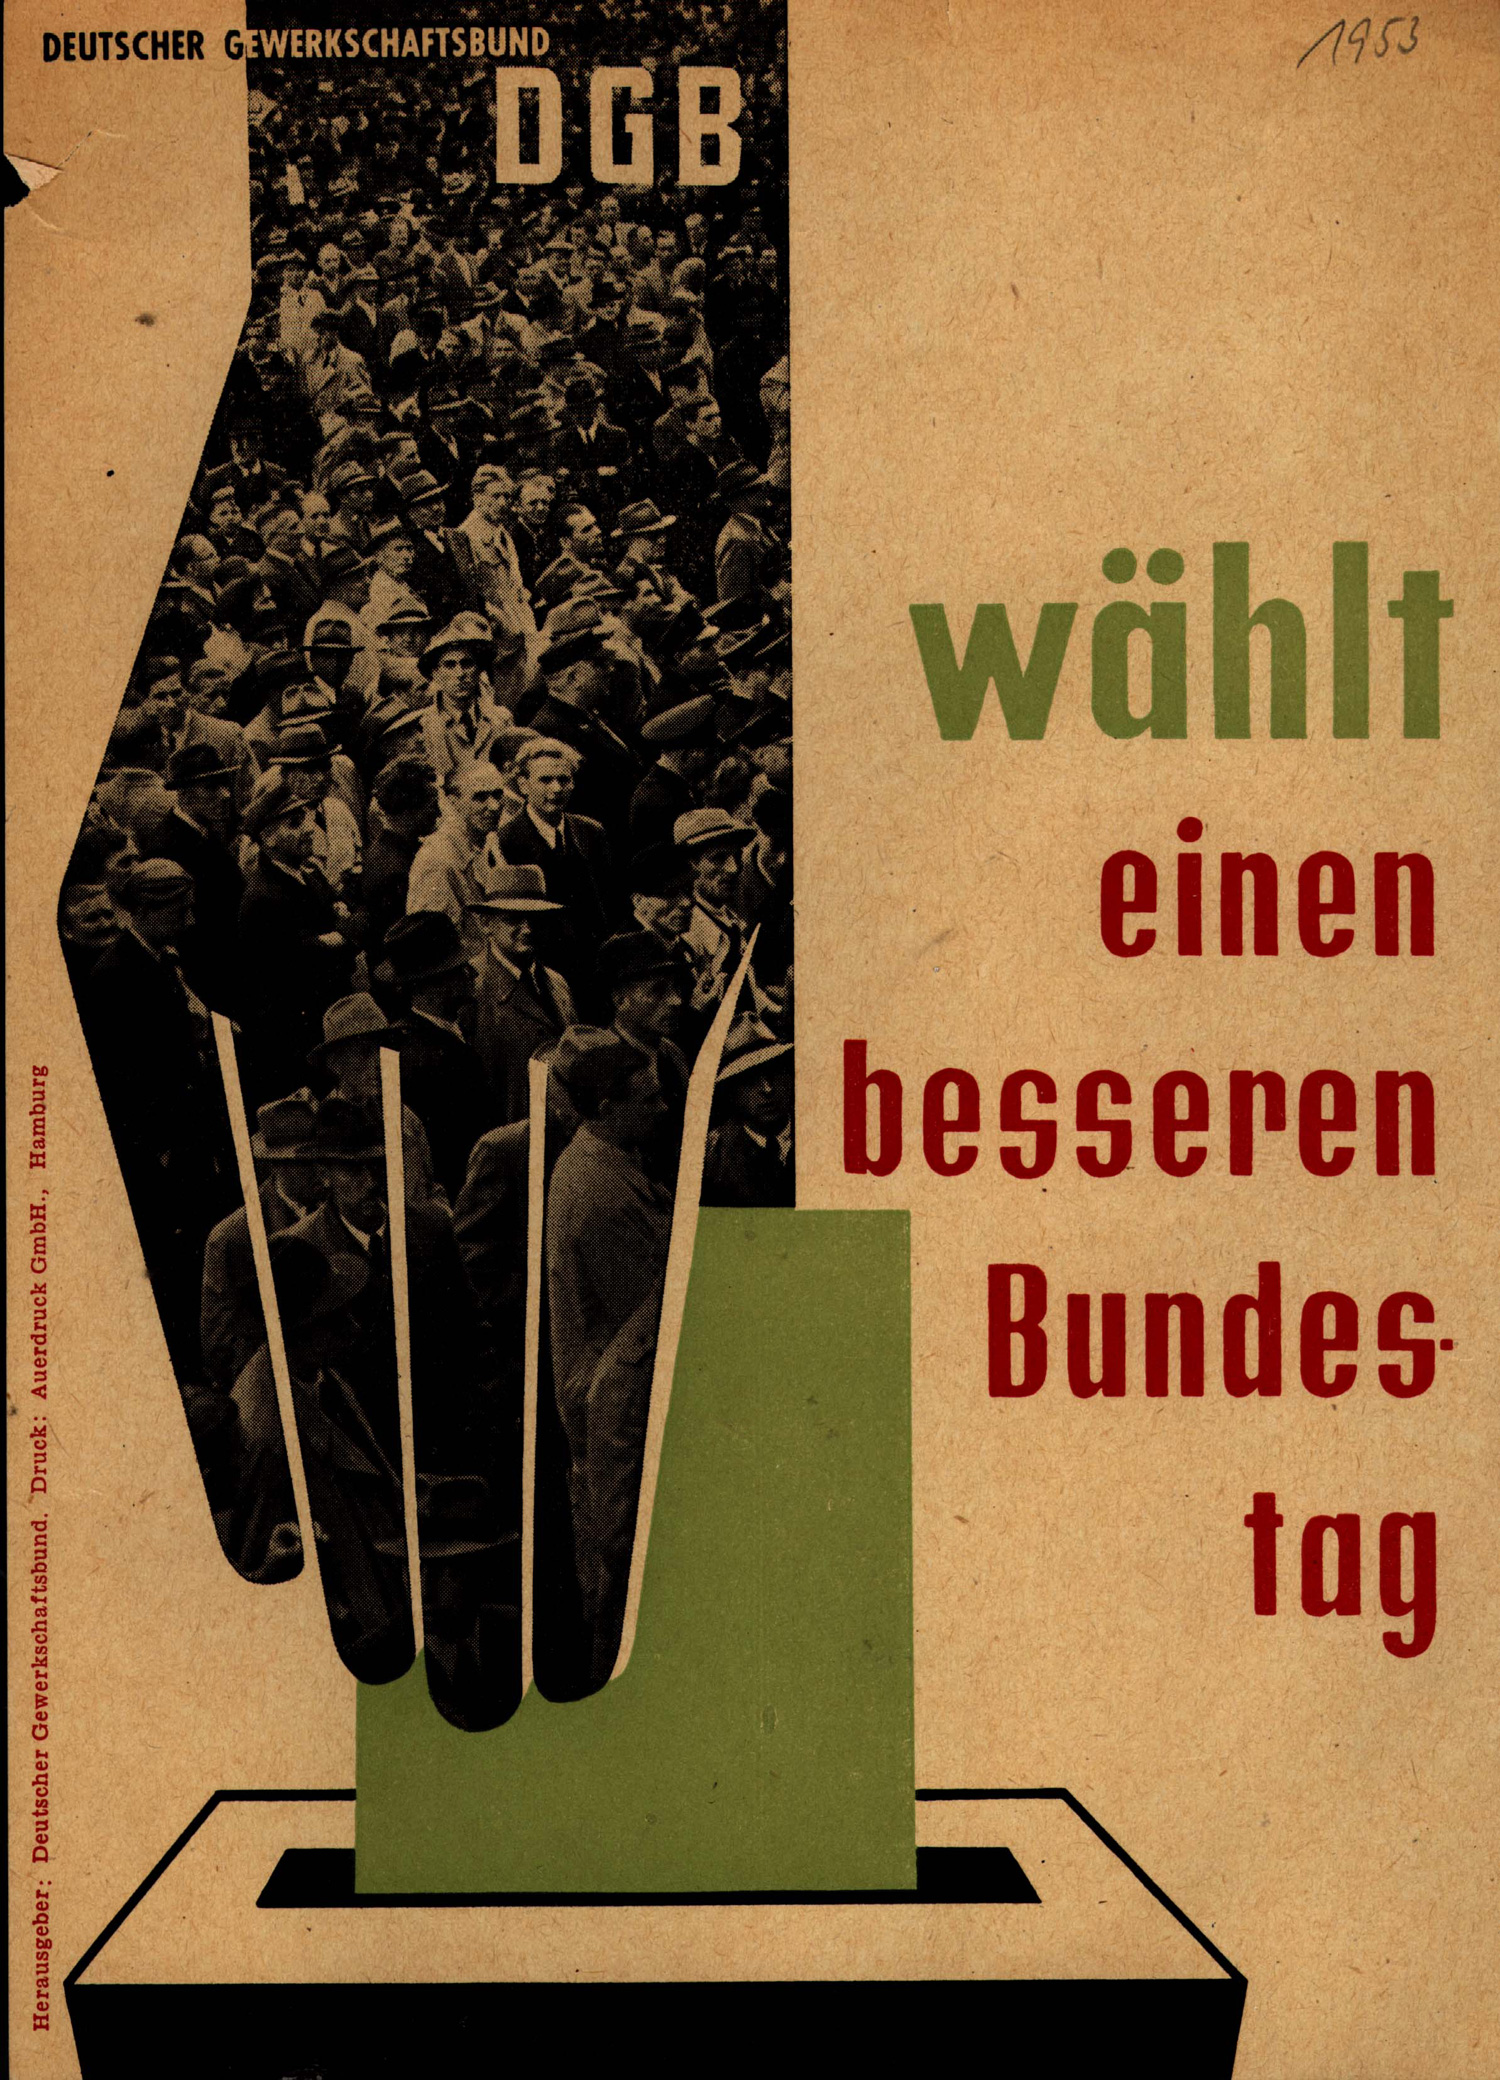 DIN A2 Gewerkschaft Plakat/ Poster DGB 1953 Wählt einen besseren Bundestag 